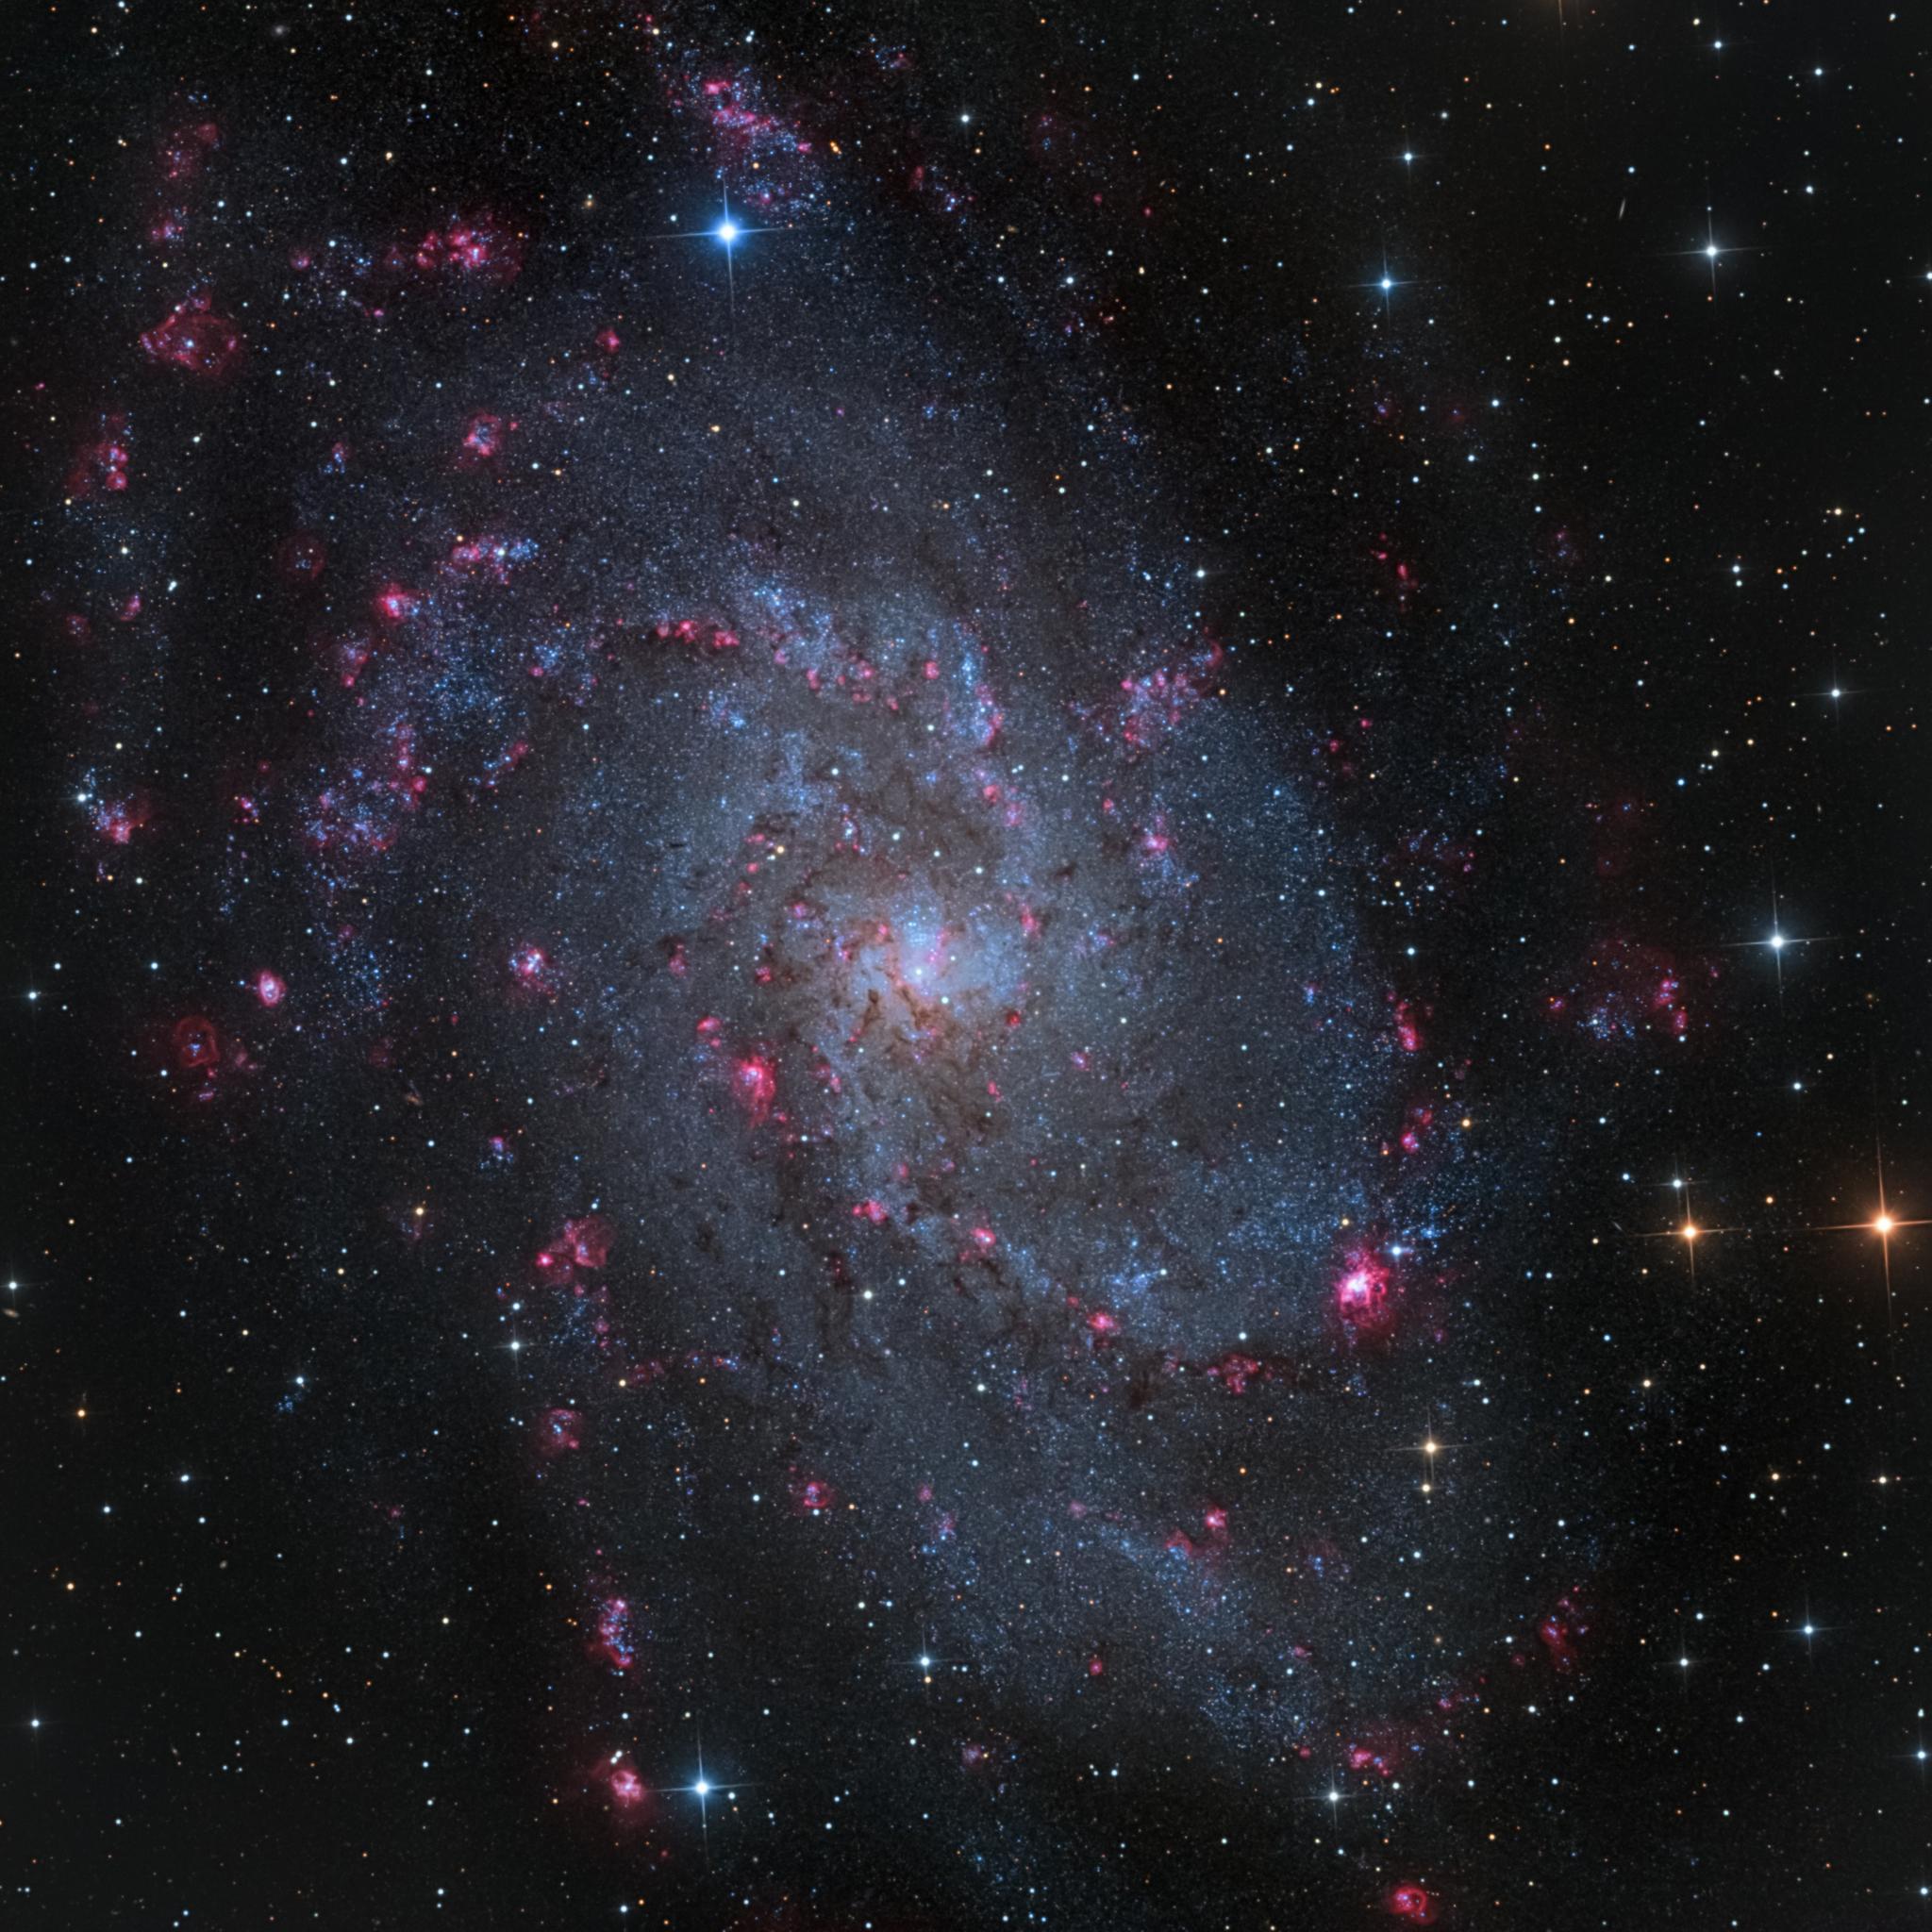 مجرّة المثلث م33 بأذرعها الحلزونيّة واسعة الالتفاف الحاوية على العناقيد النجميّة الزرقاء ومناطق التشكّل النجمي الورديّة ومن بينها إن‌جي‌سي 604 الجوفاء في الموضع المقابل للساعة الرابعة.